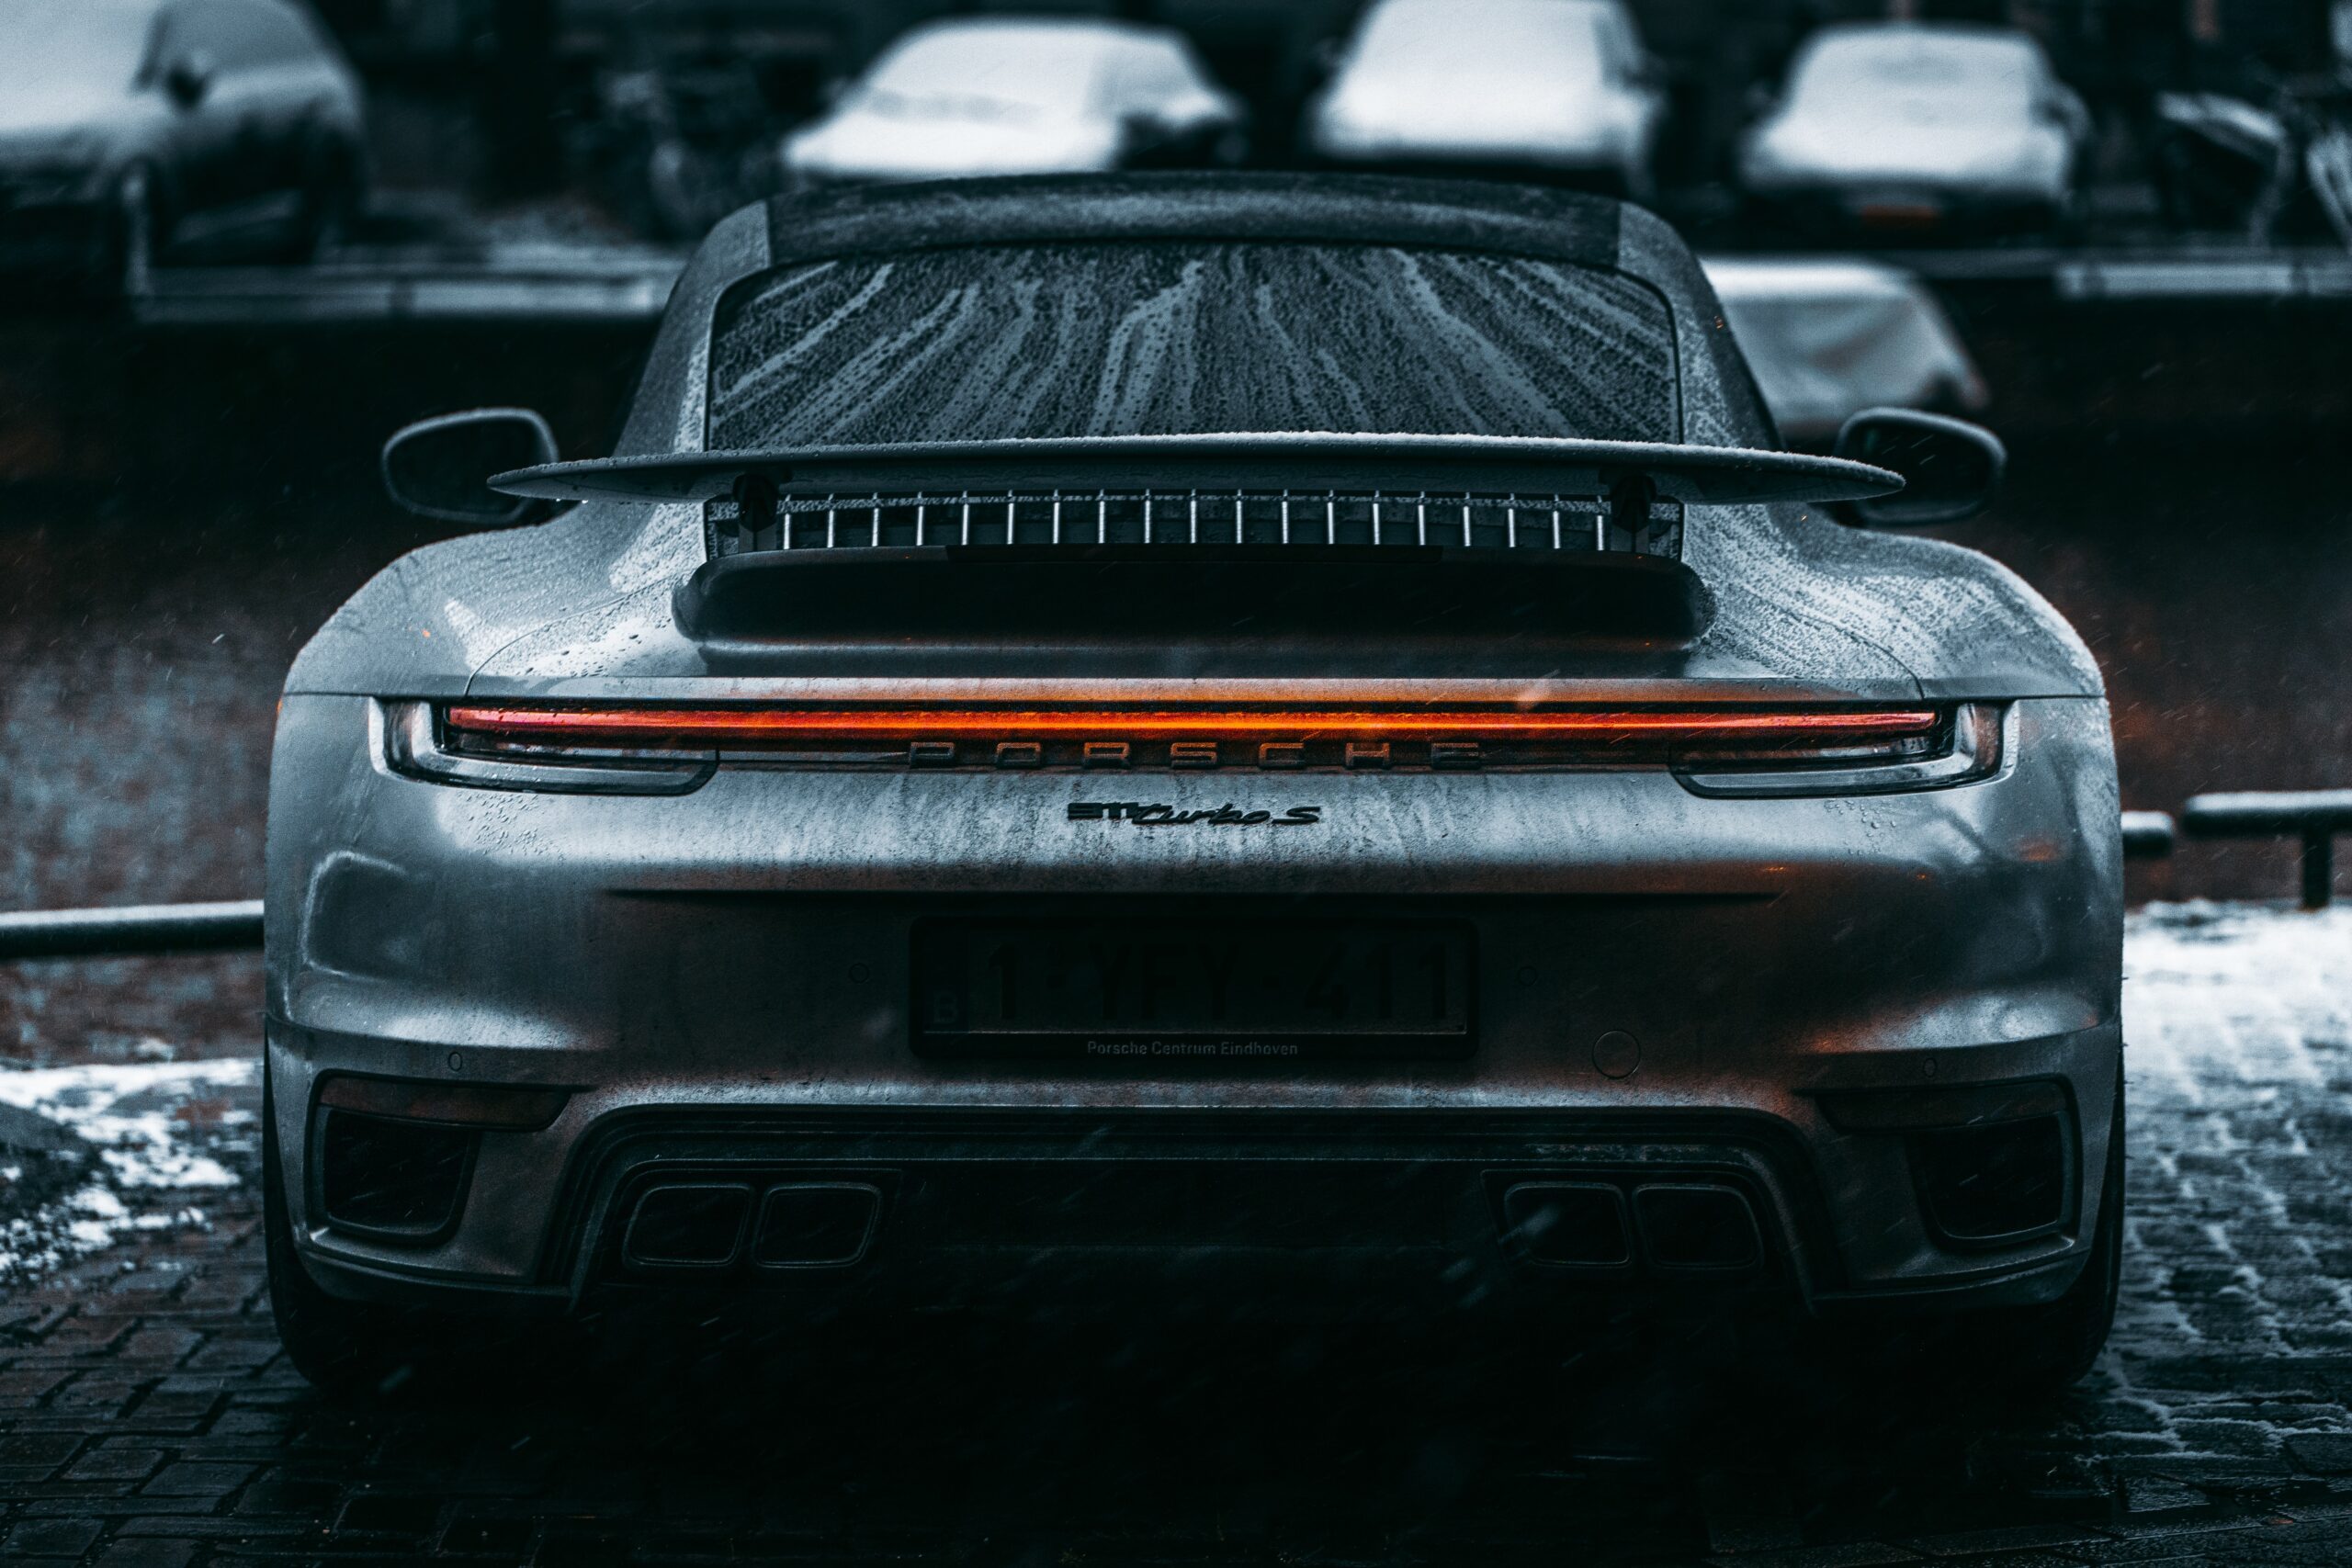 Silver Porsche 911 Turbo S in the Rain